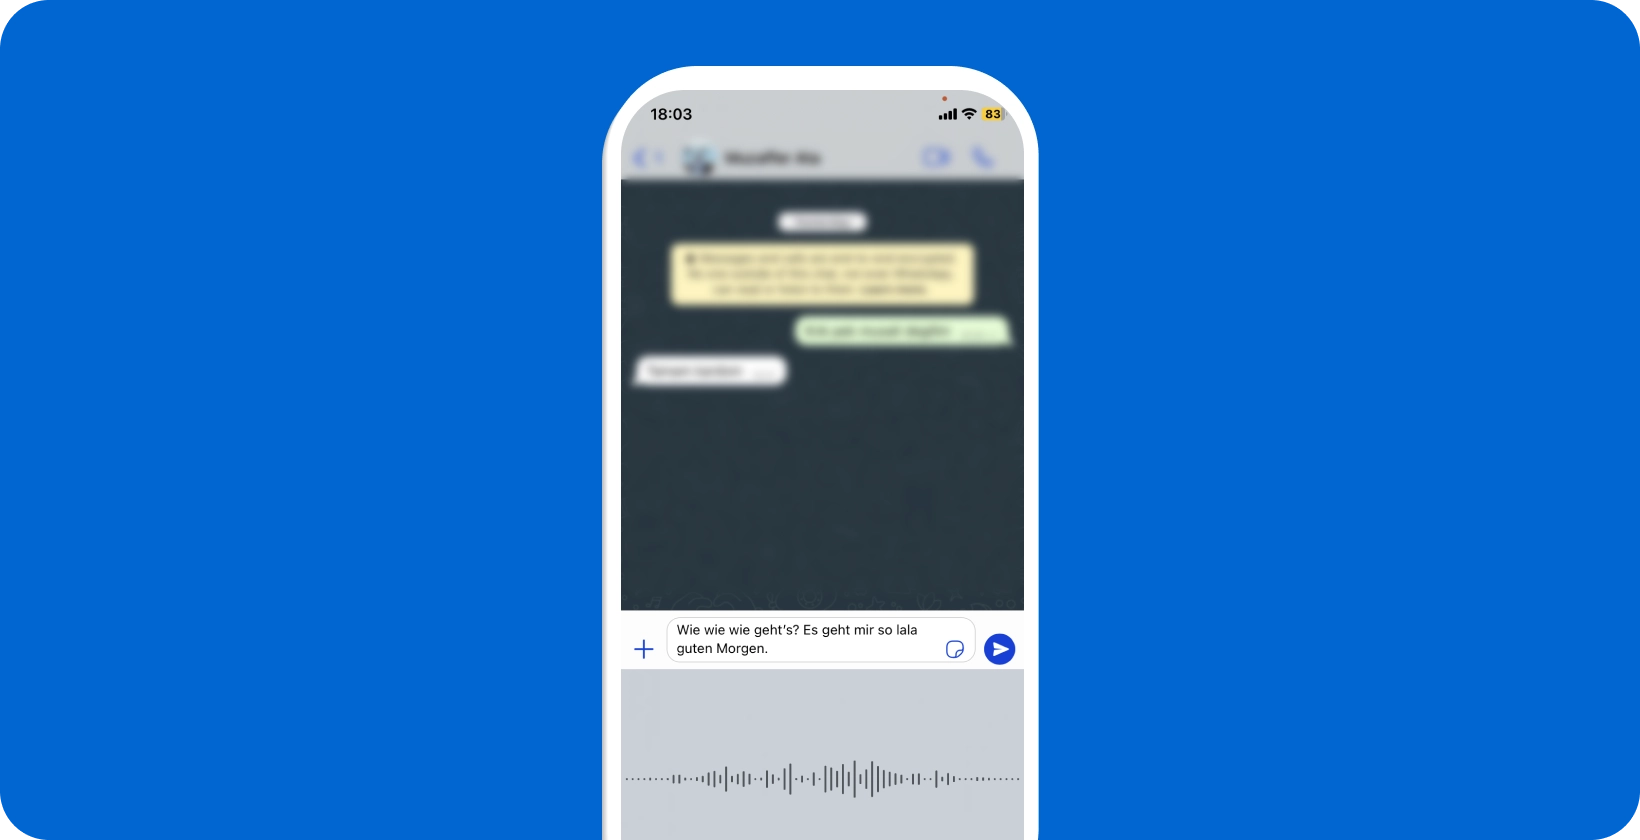 स्मार्टफोन WhatsApp आवाज श्रुतलेख प्रगति पर दिखा रहा है, वास्तविक समय वाक्-से-पाठ रूपांतरण दिखा रहा है।